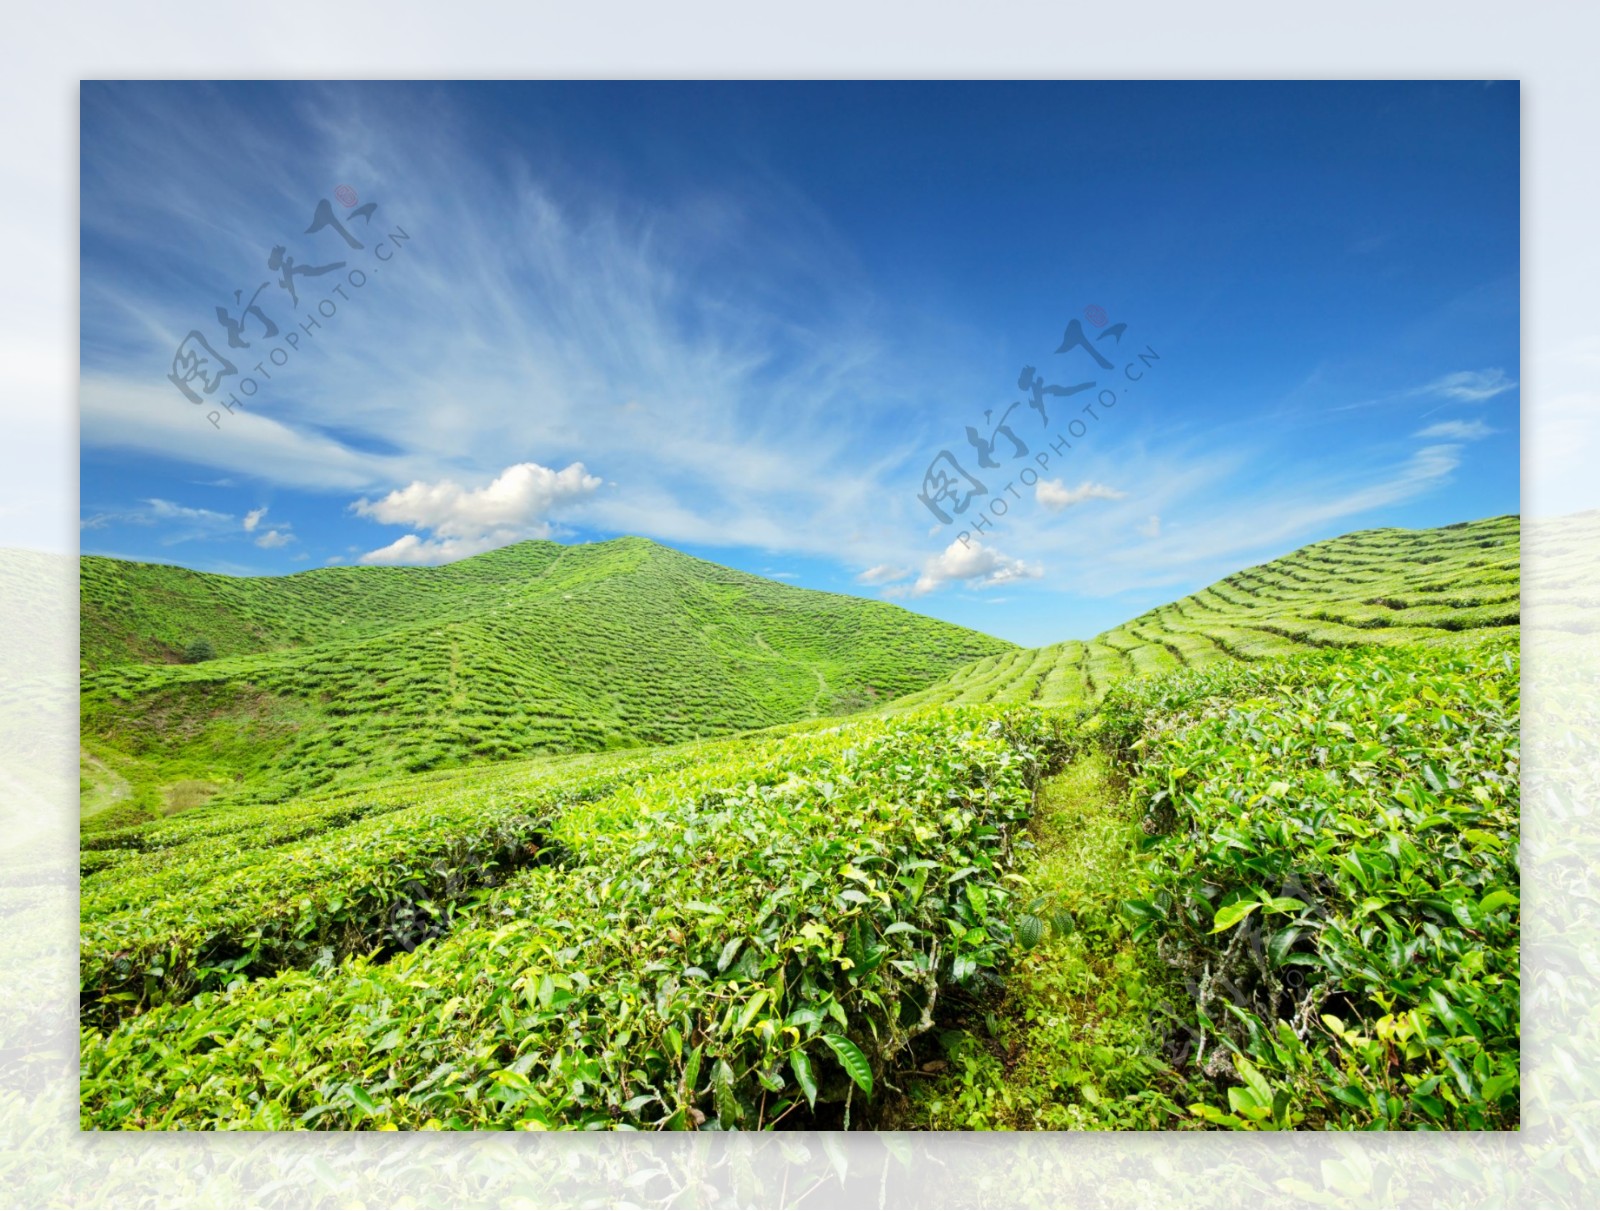 美丽绿茶茶山风景图片